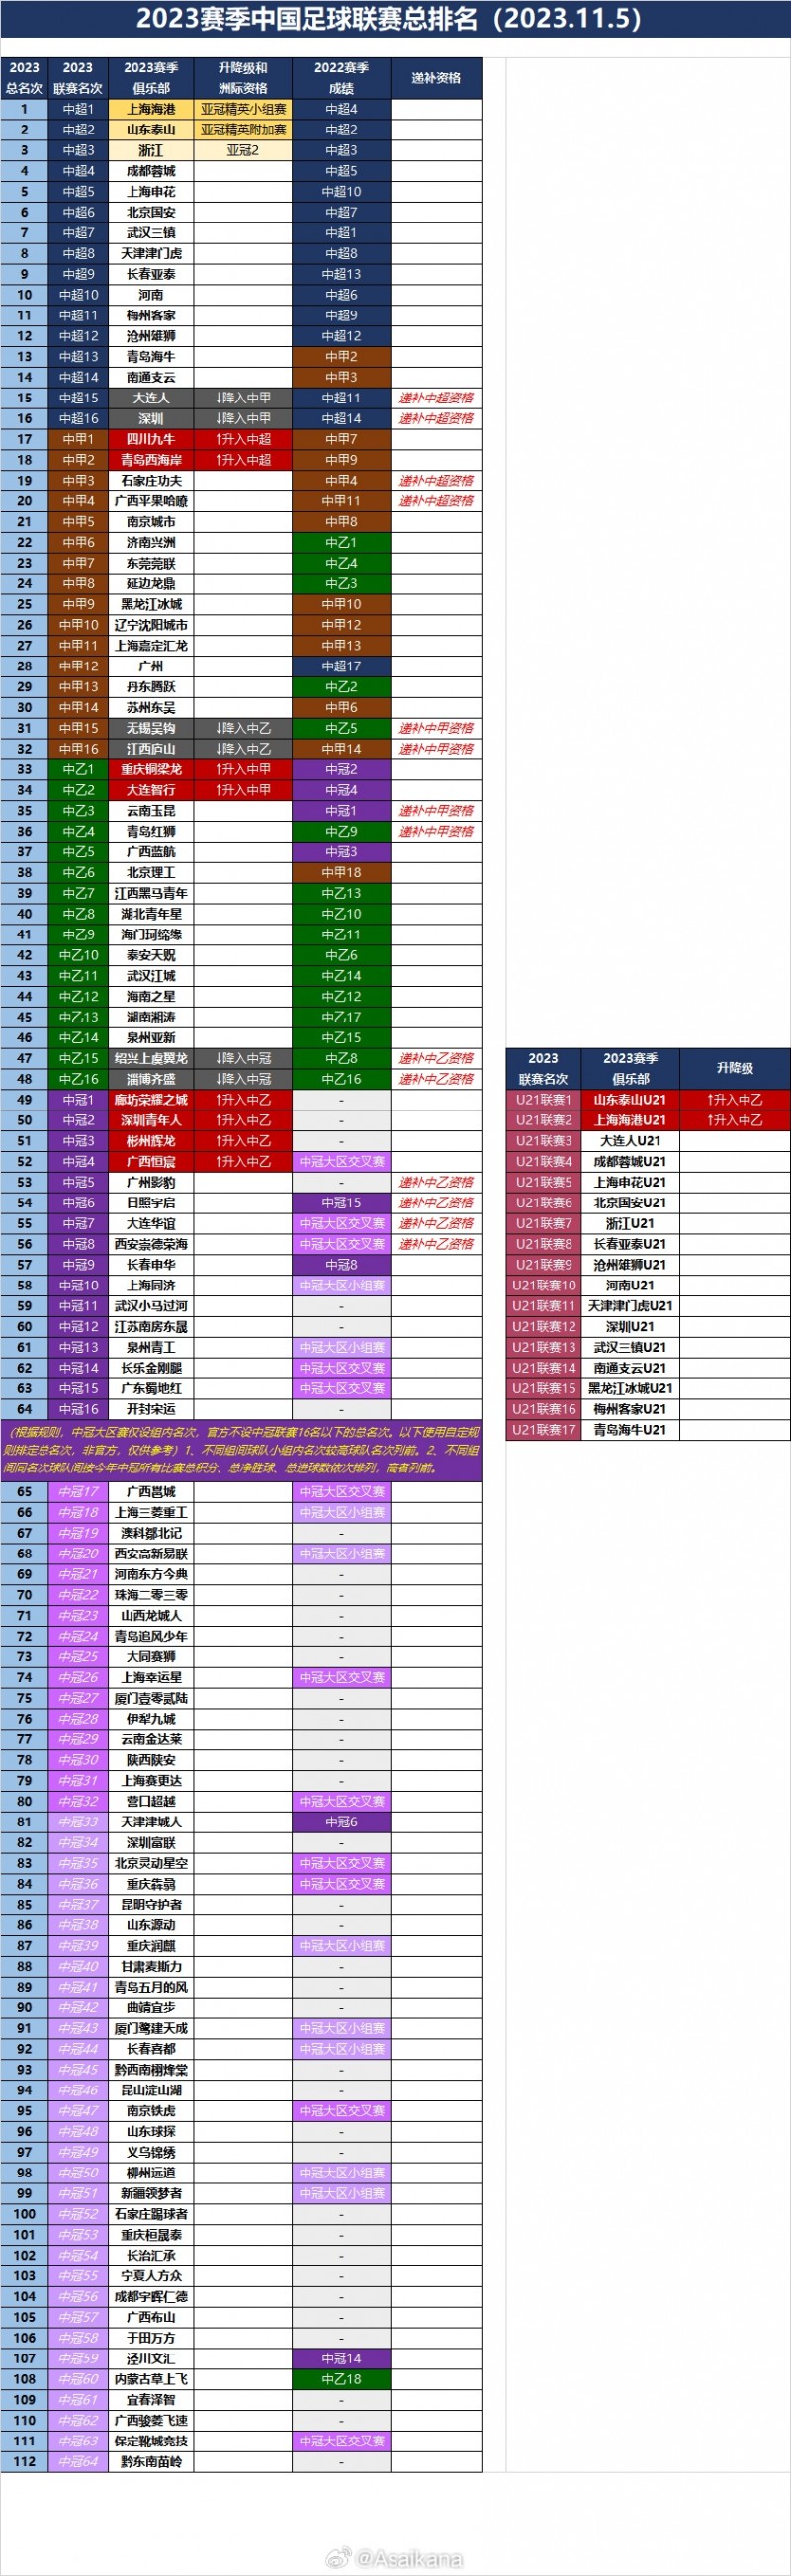 2023赛季中国足球联赛总排名（2023.11.5）全部排名出炉 ​​​